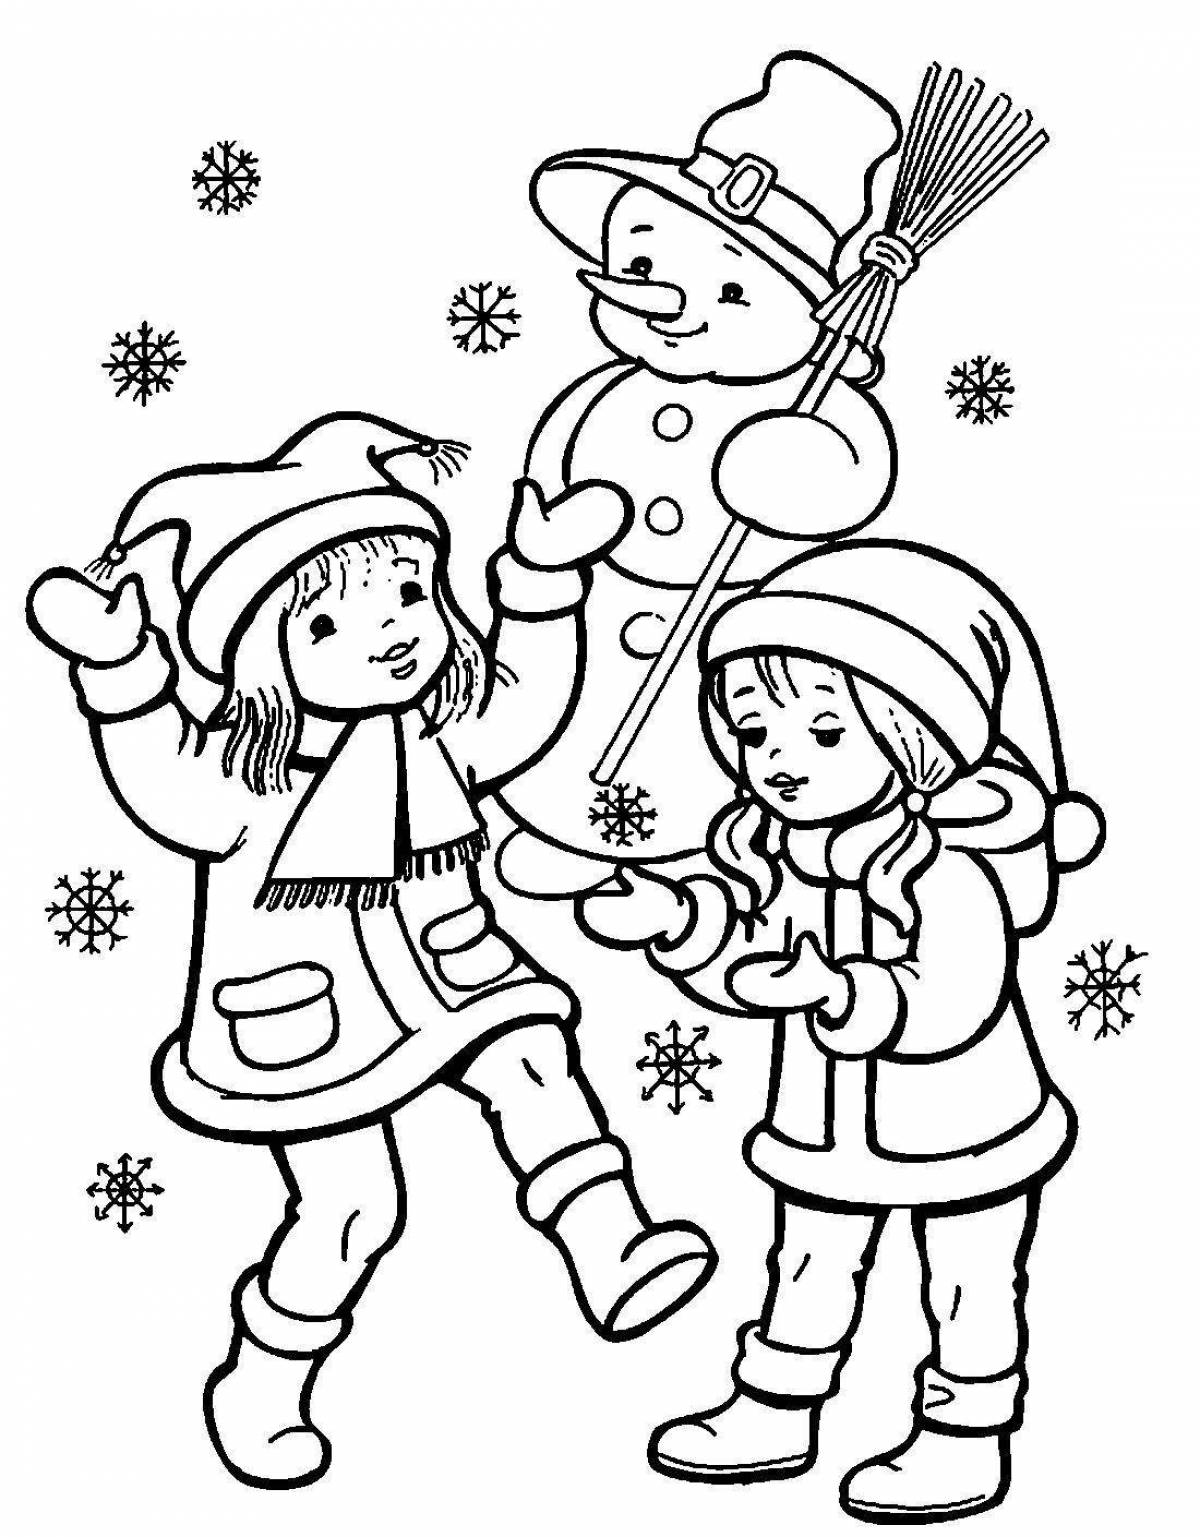 Carols for children 6 7 #1